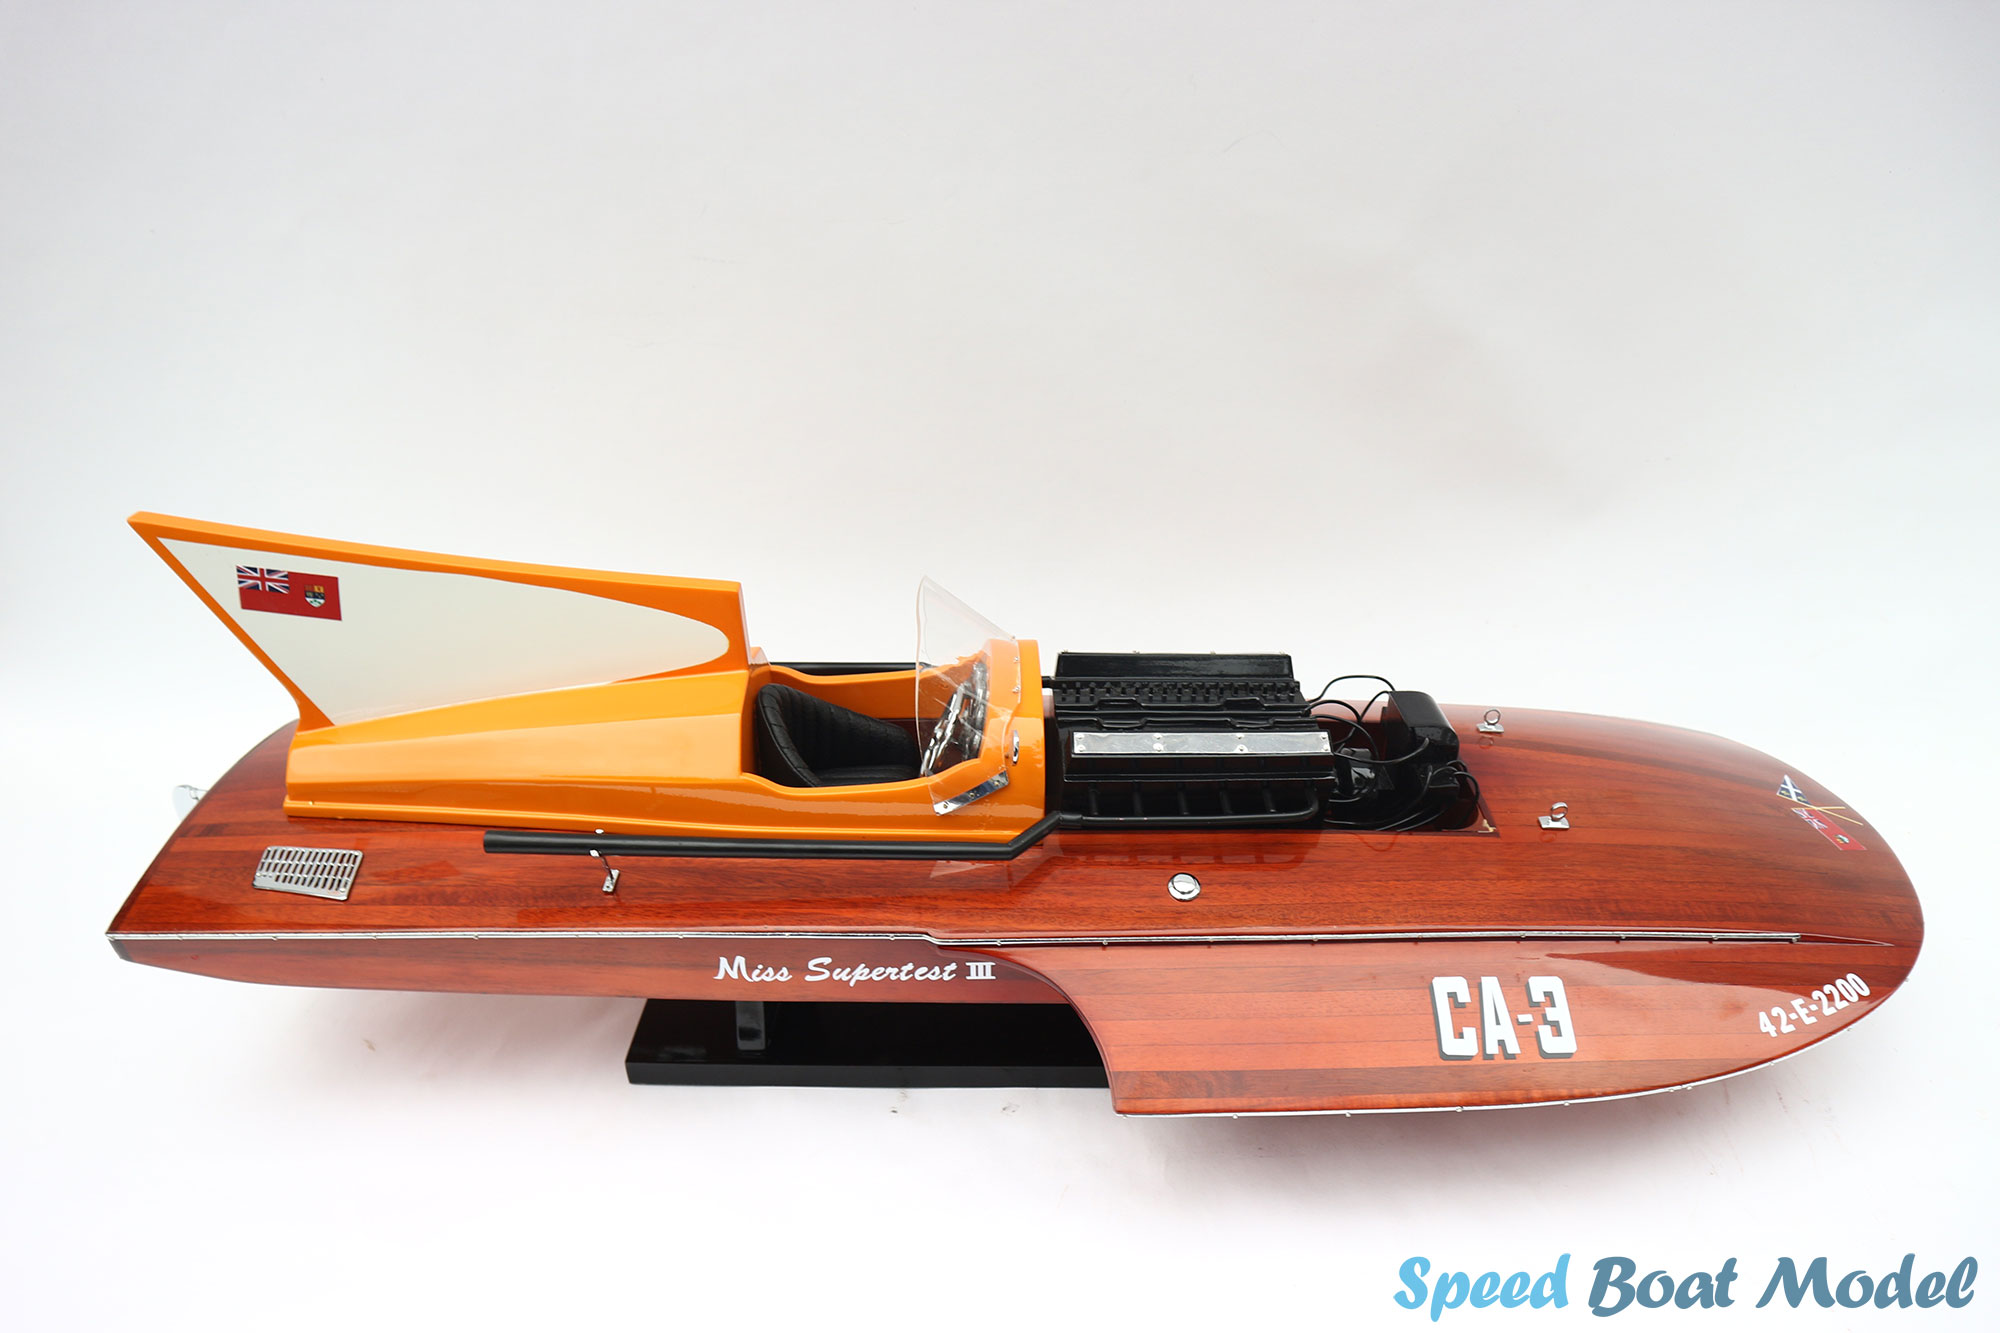 Miss Super Test III Speed Boat Model 30"